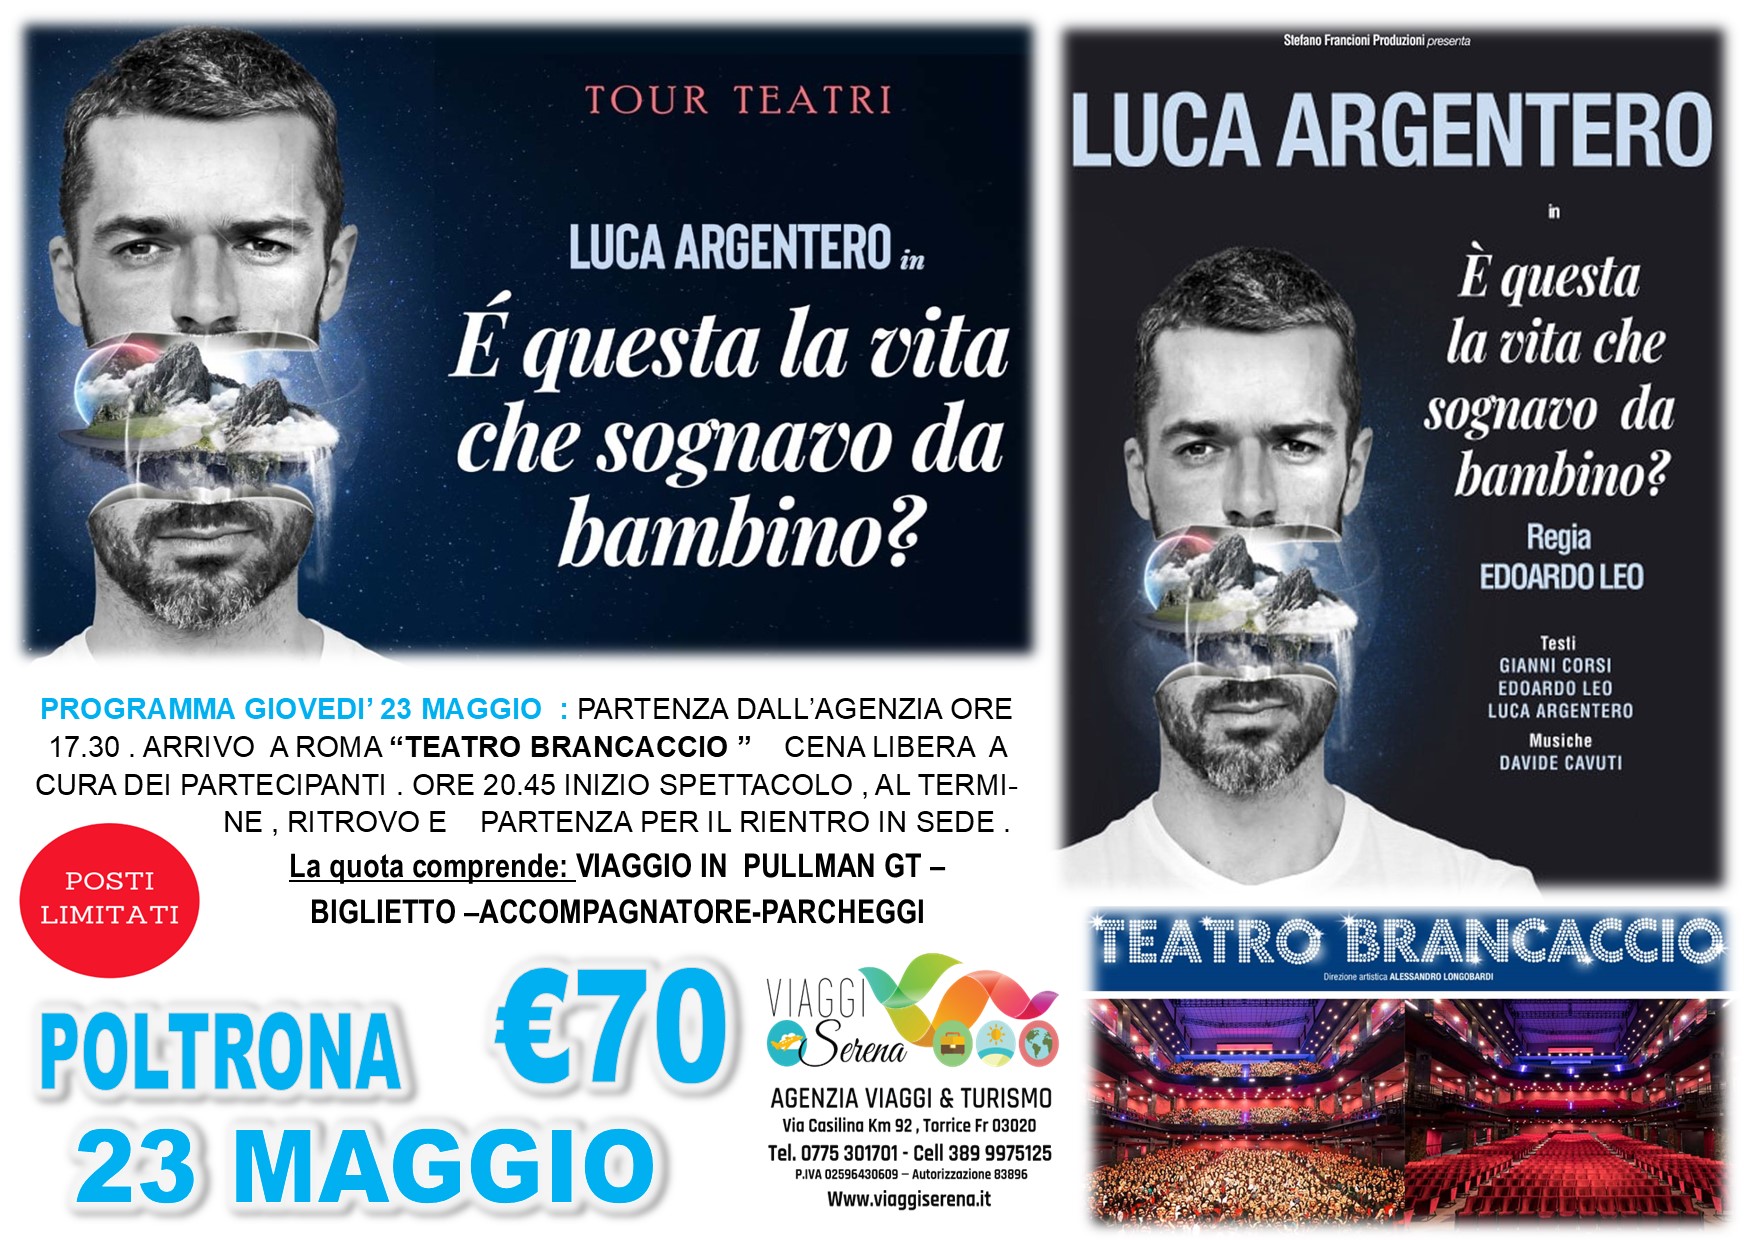 Viaggi di gruppo: TEATRO “Luca Argentero” Poltrona Teatro Brancaccio 23 Maggio € 70,00